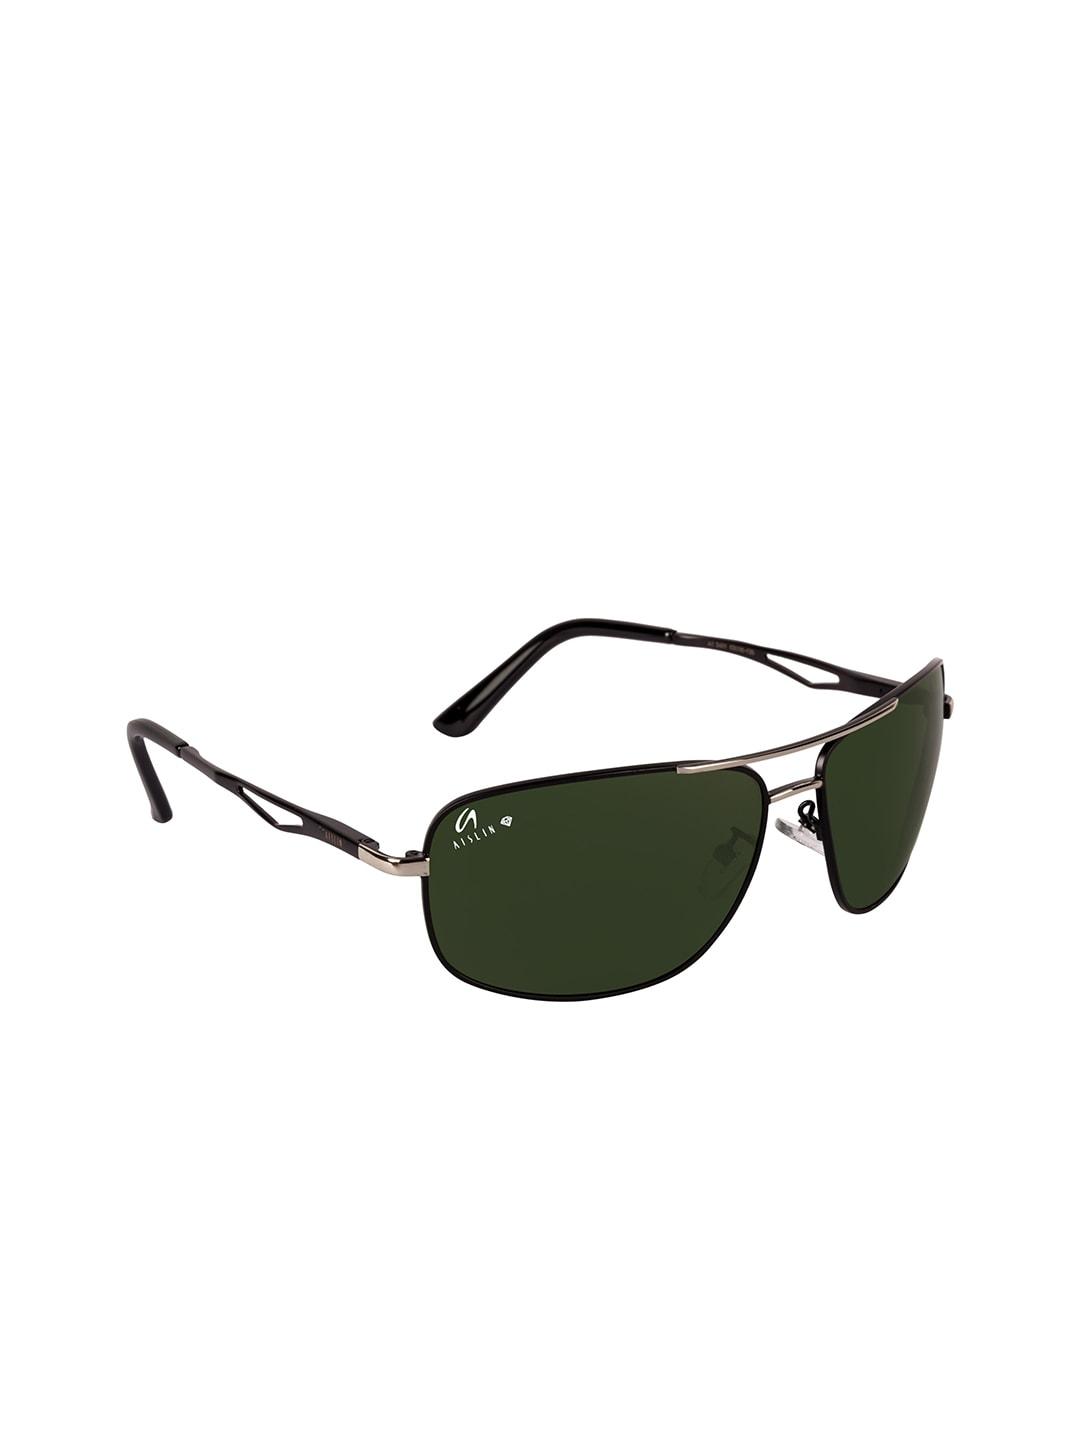 aislin men olive lens & black full rim square sunglasses 14298-55-as-3481